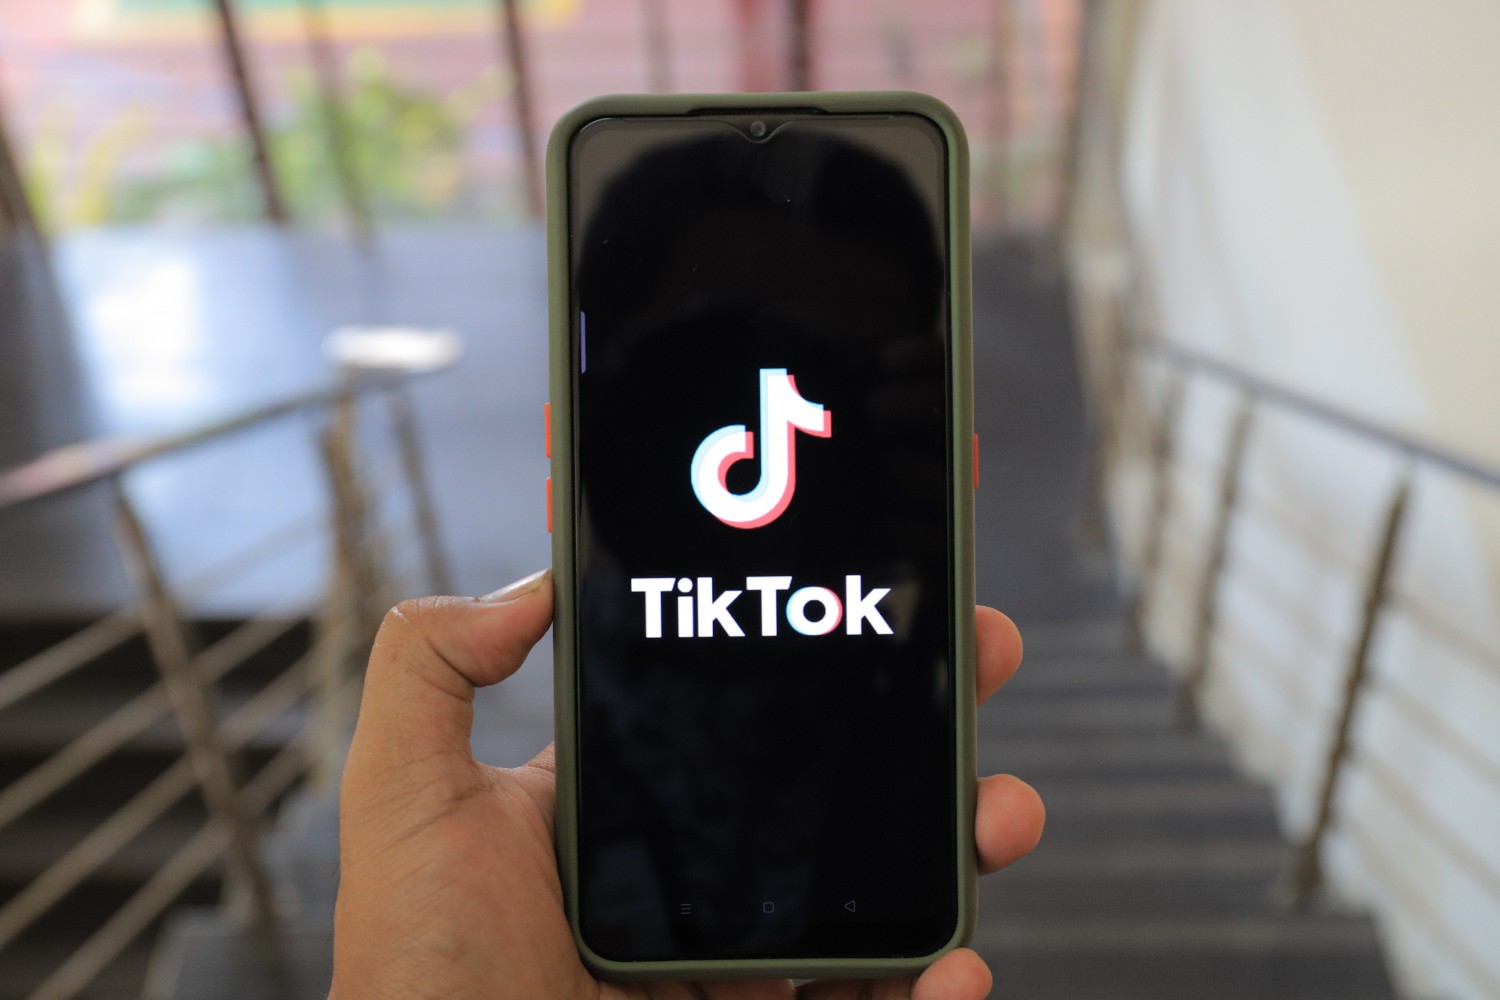  TikTok открыл для посетителей Центр прозрачности и отчетности в Лос-Анджелесе 